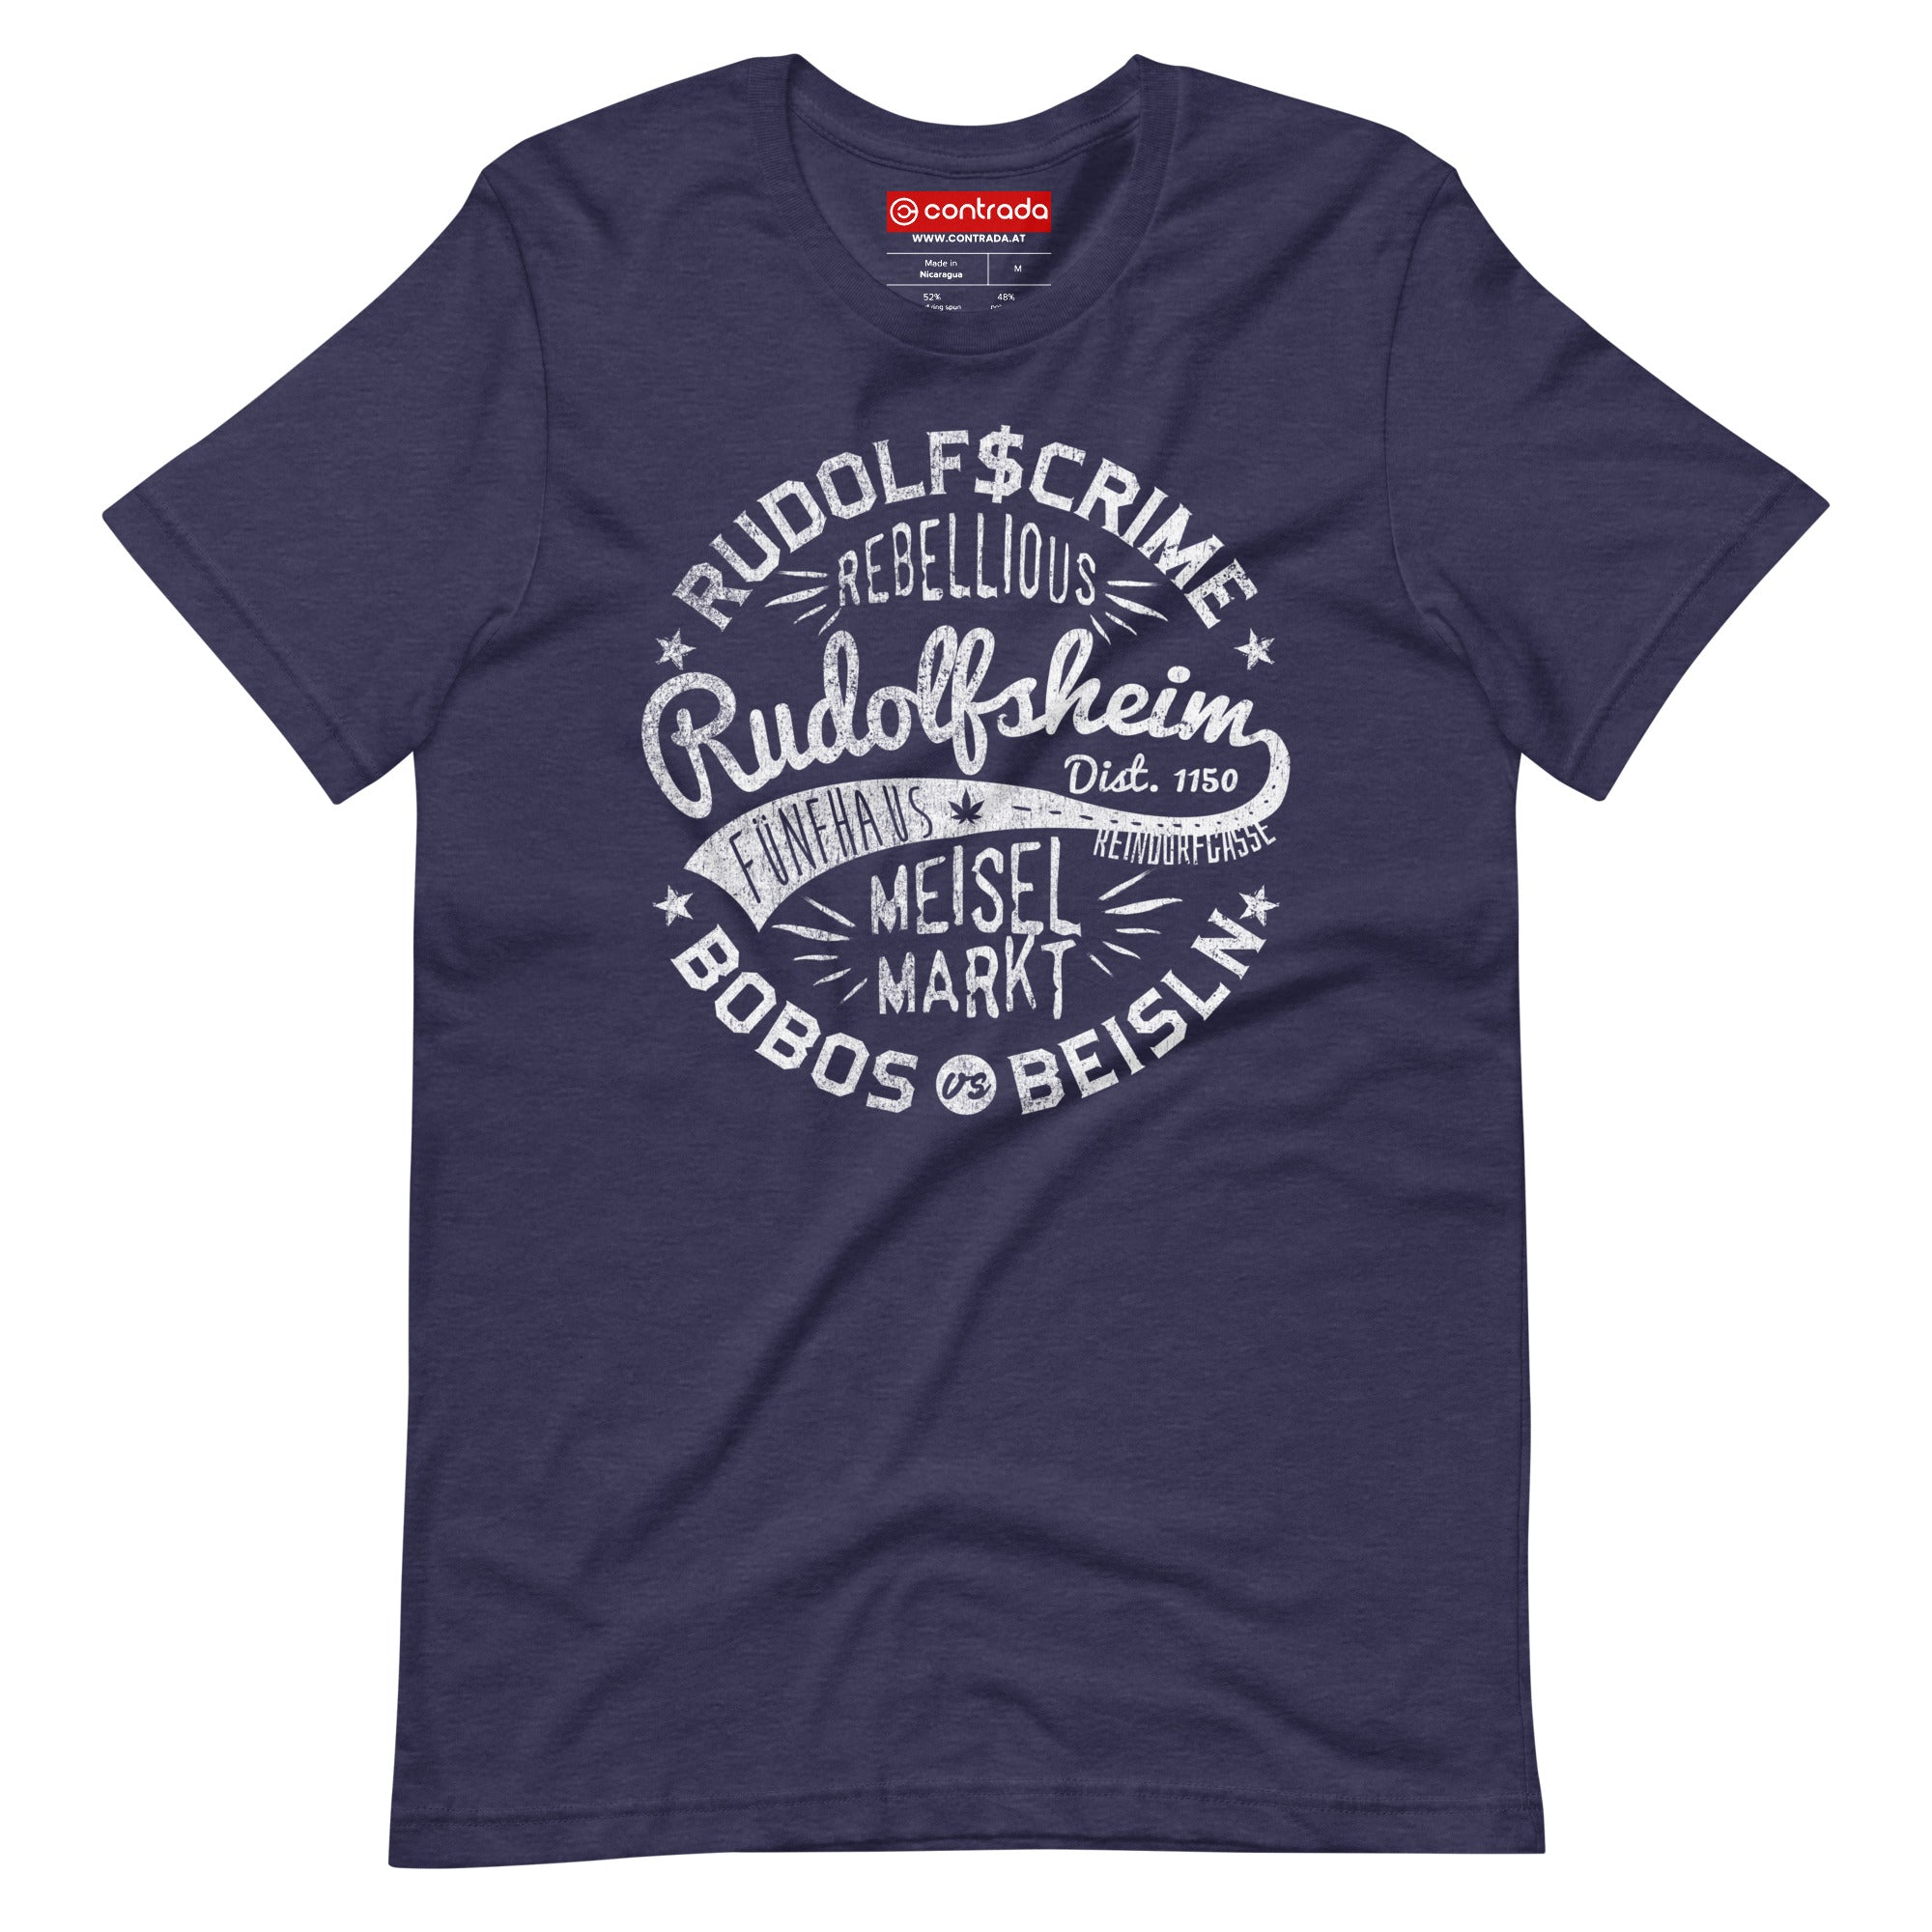 15., Rudolfsheim-Fünfhaus, Wien, „Americana“, Modern Basic T-Shirt